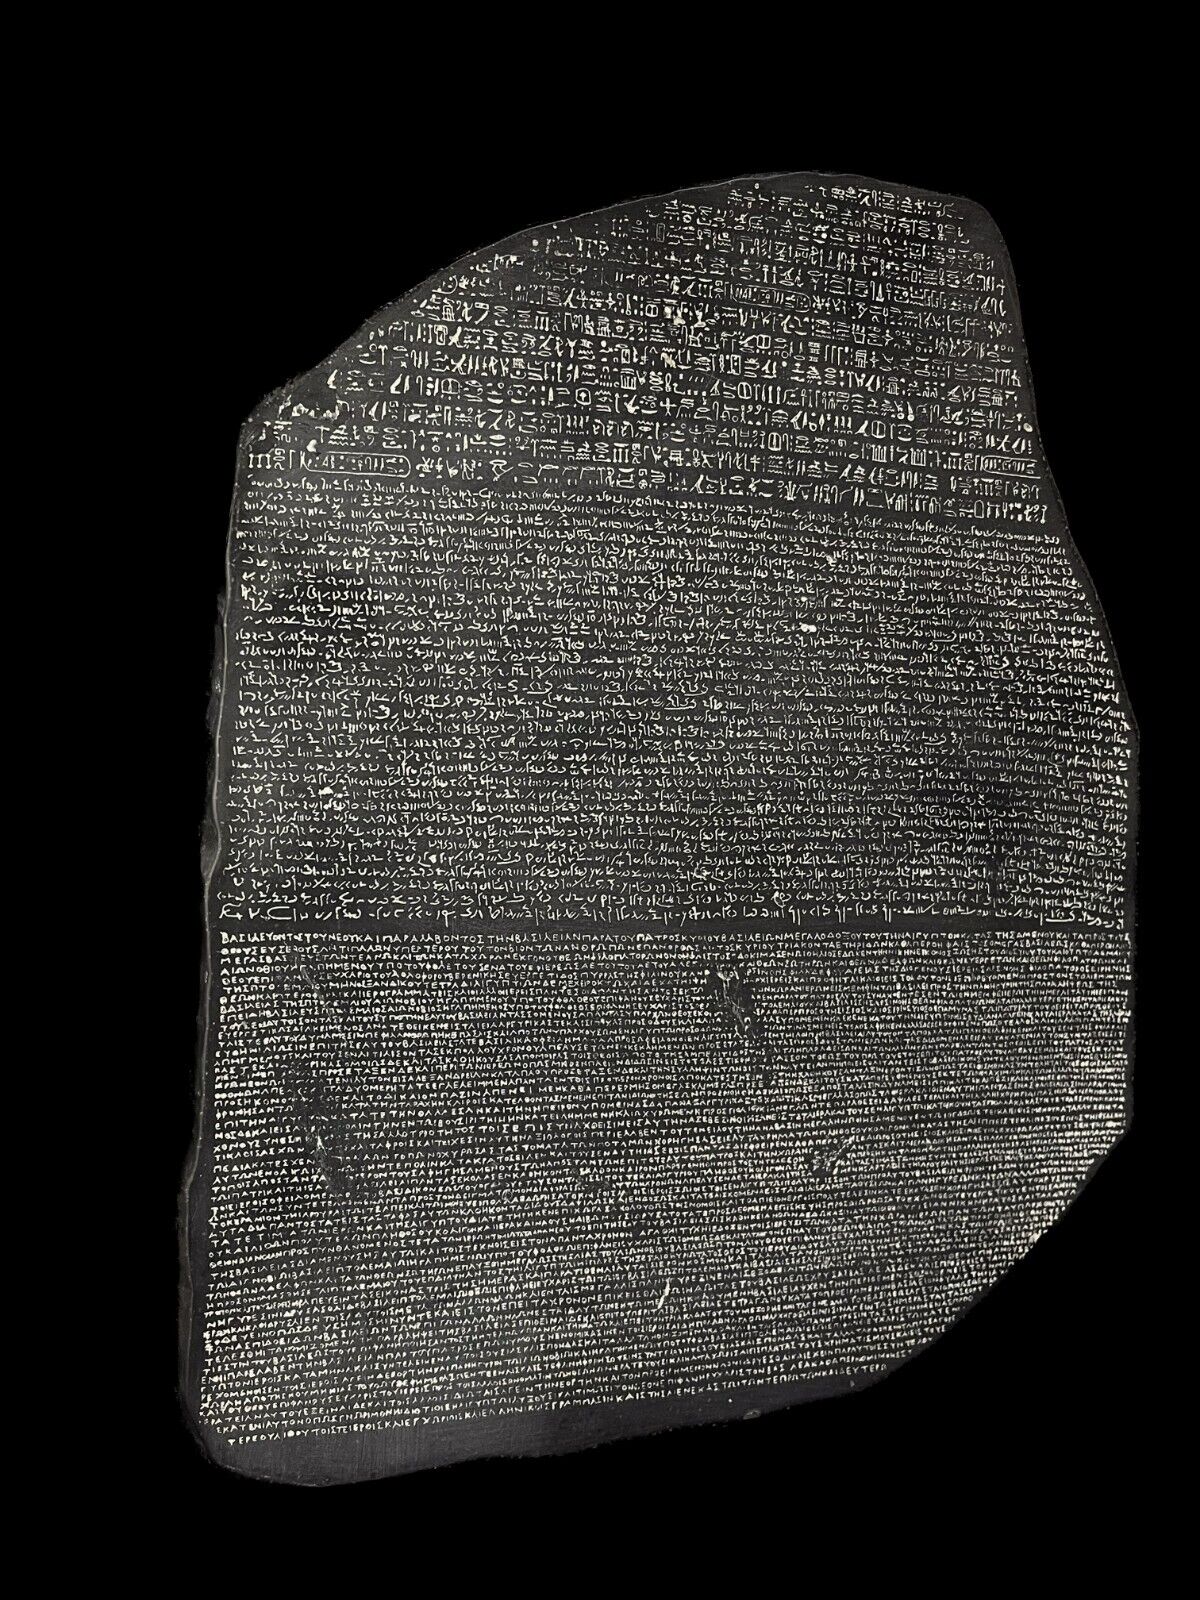 Rosetta Stone, Replica for the Ancient Rosetta stone , Egyptian Art Treasure